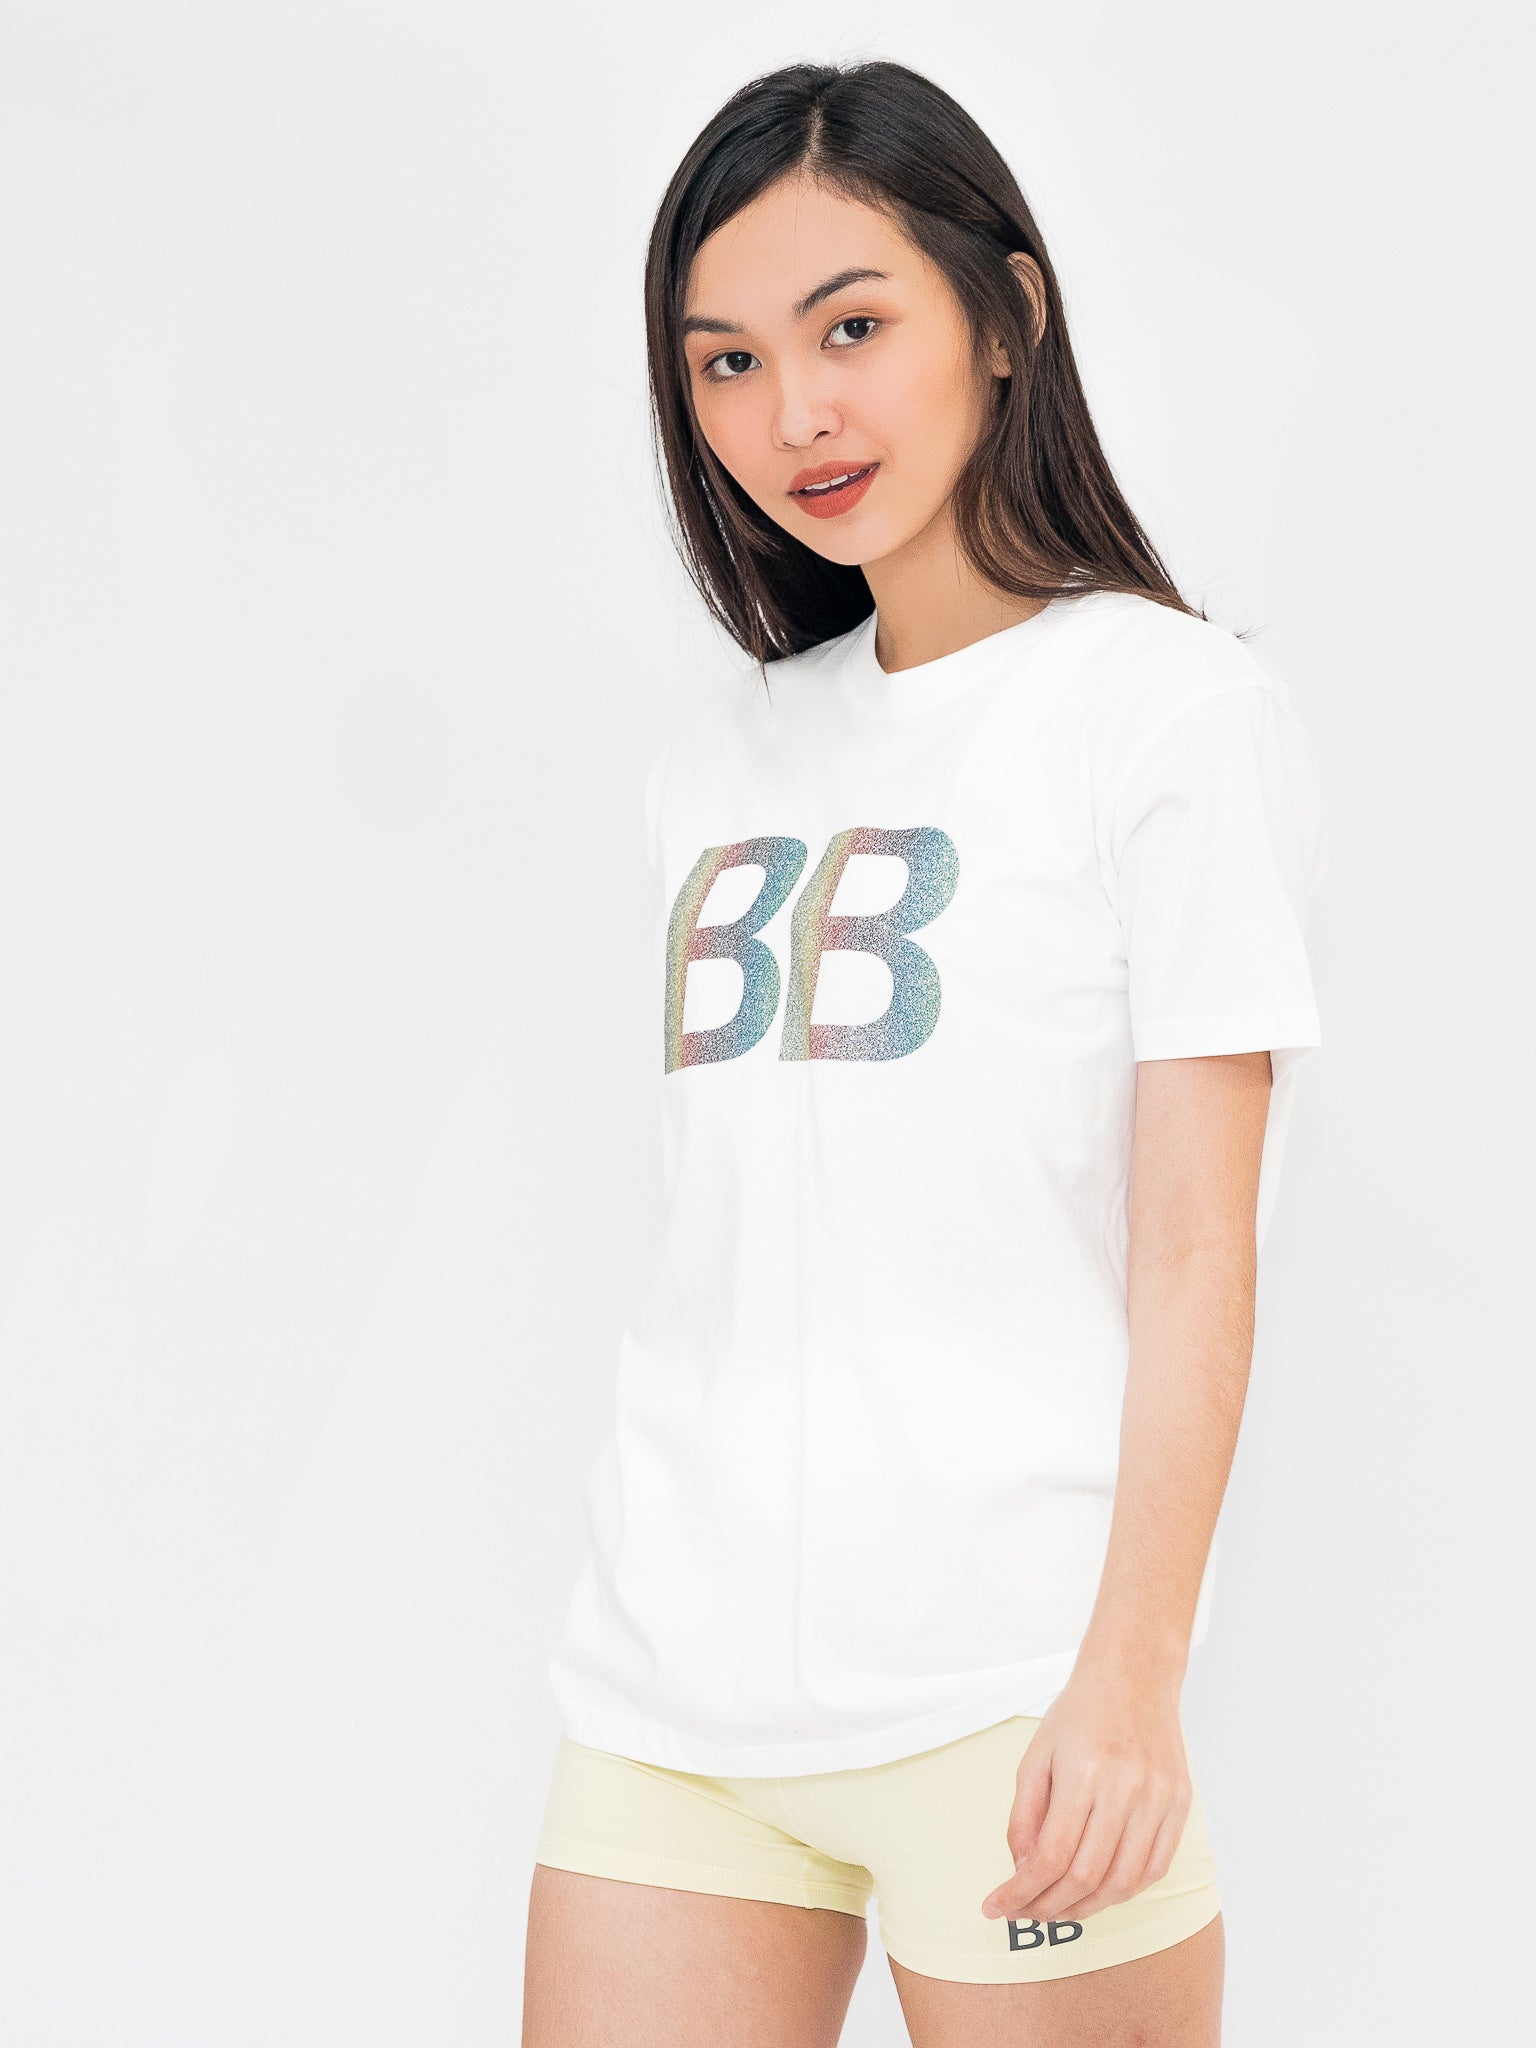 BB Rainbow Sparkle Shirt